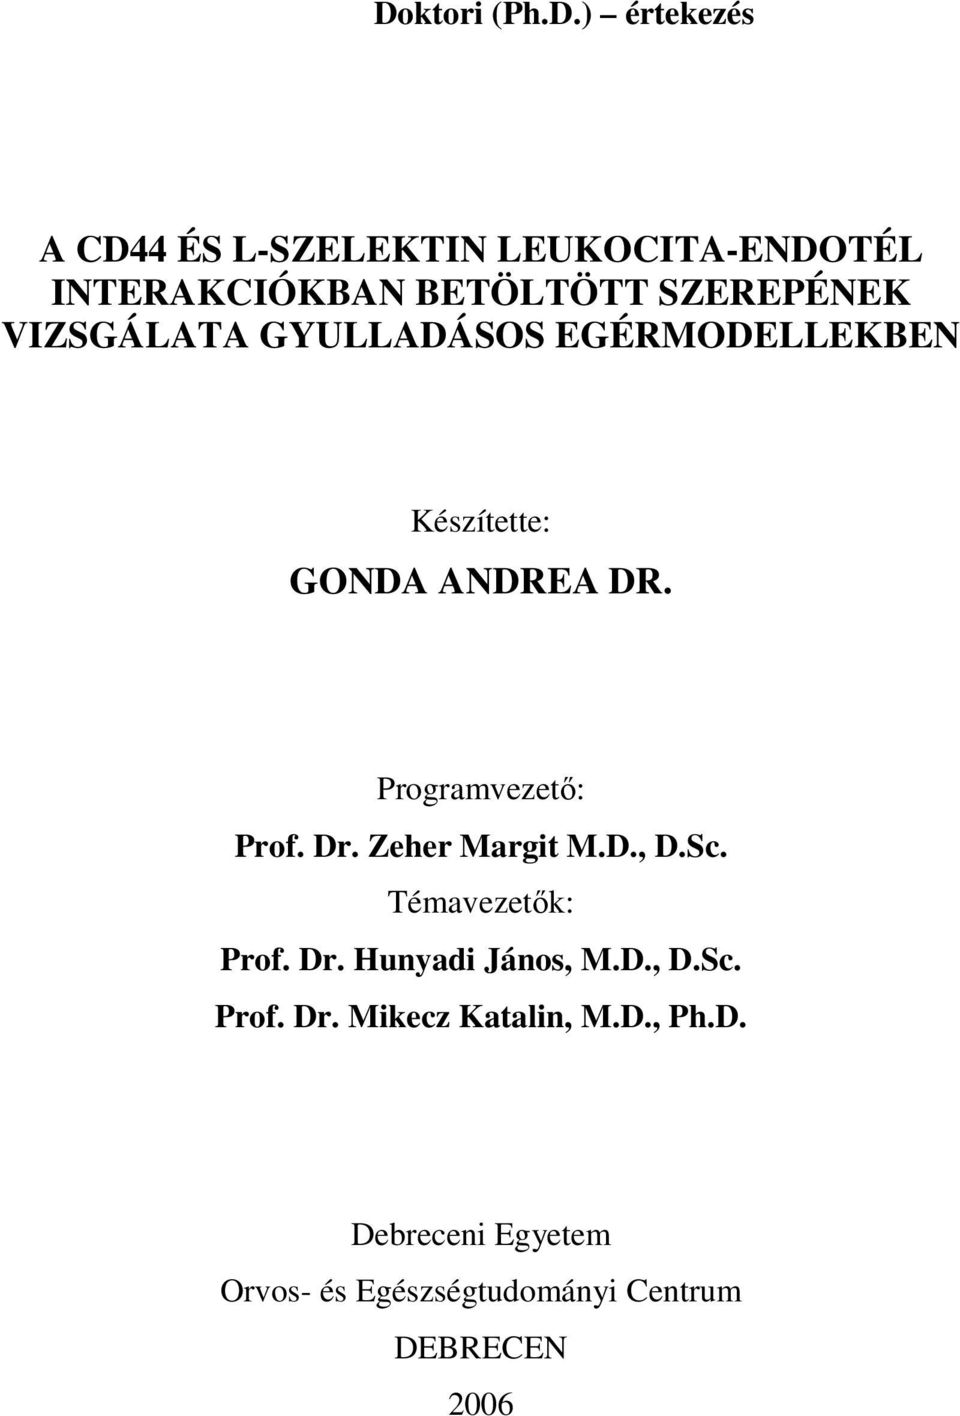 Programvezetı: Prof. Dr. Zeher Margit M.D., D.Sc. Témavezetık: Prof. Dr. Hunyadi János, M.D., D.Sc. Prof. Dr. Mikecz Katalin, M.